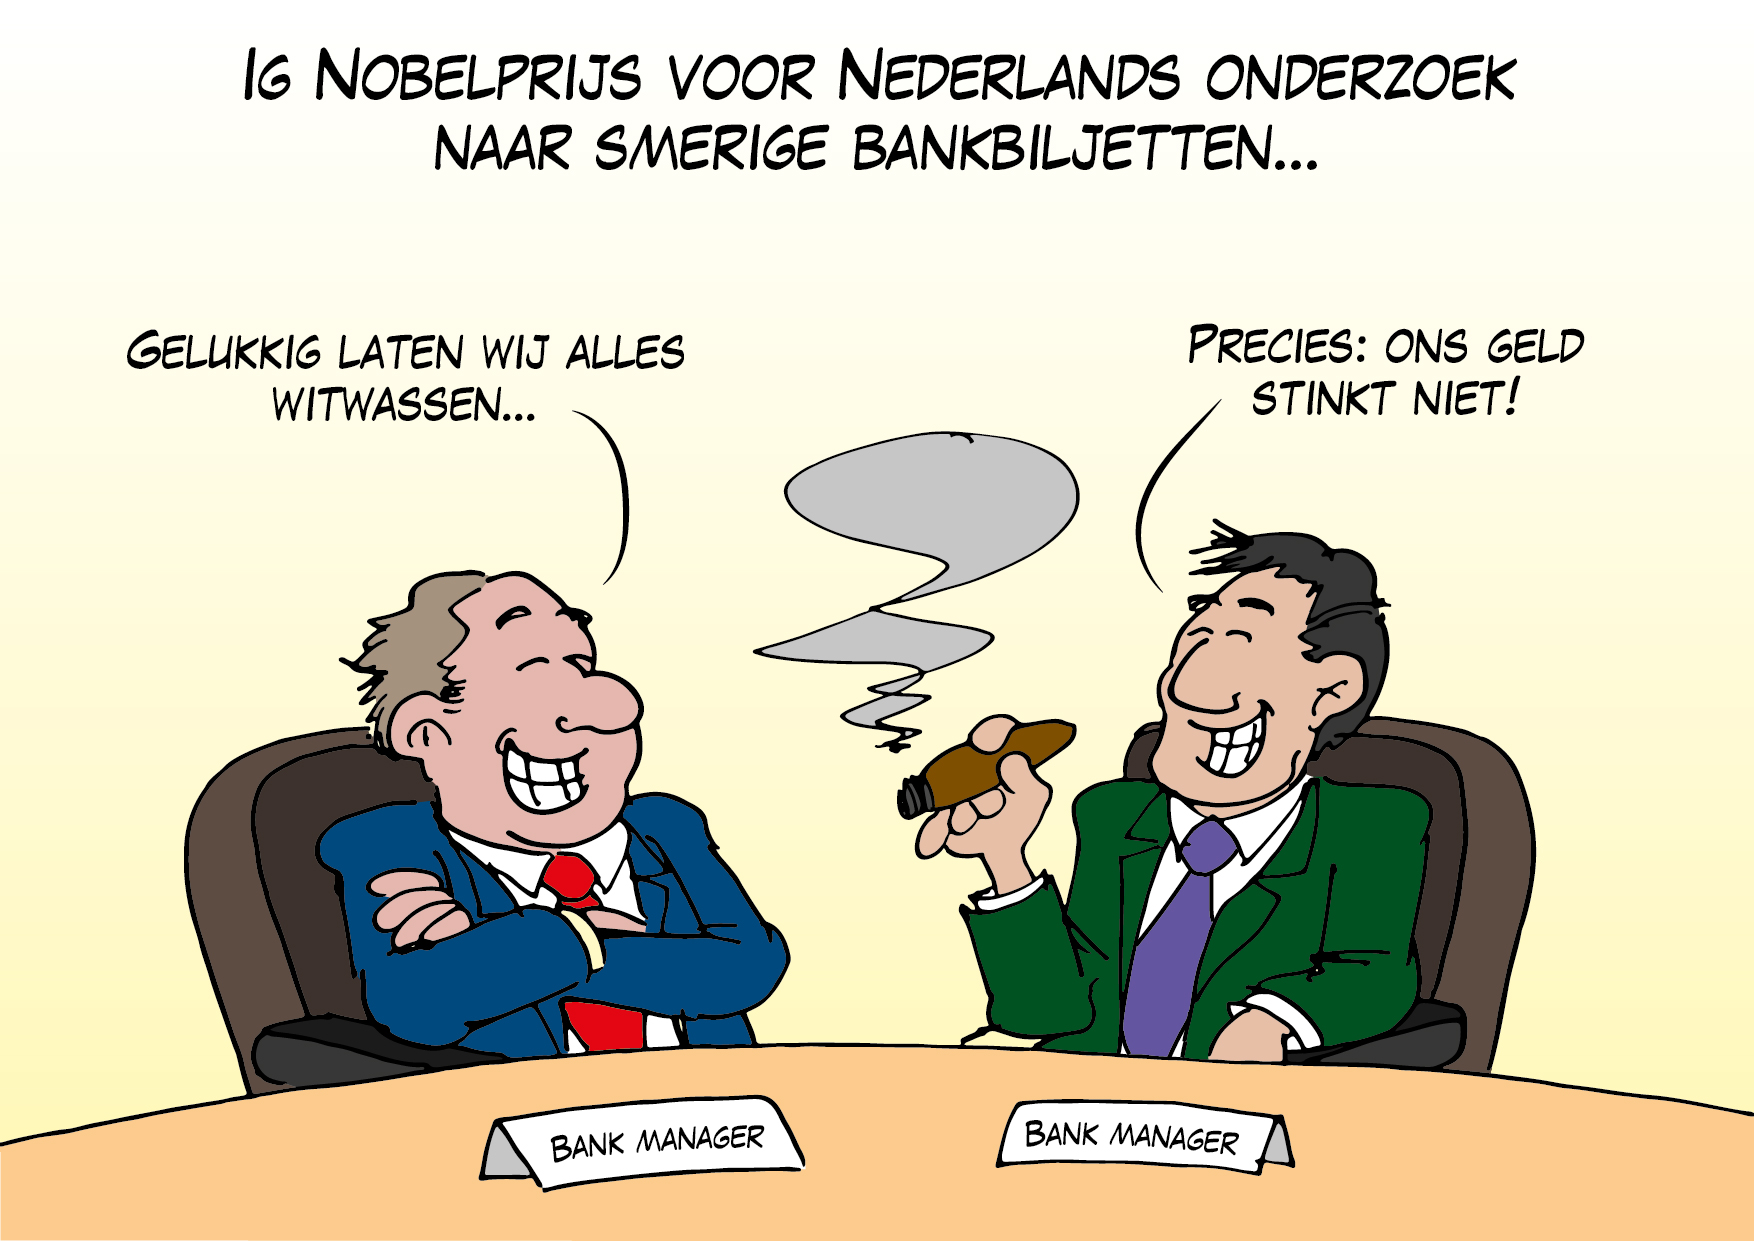 Ig Nobelprijs voor Nederlands onderzoek naar smerige bankbiljetten…